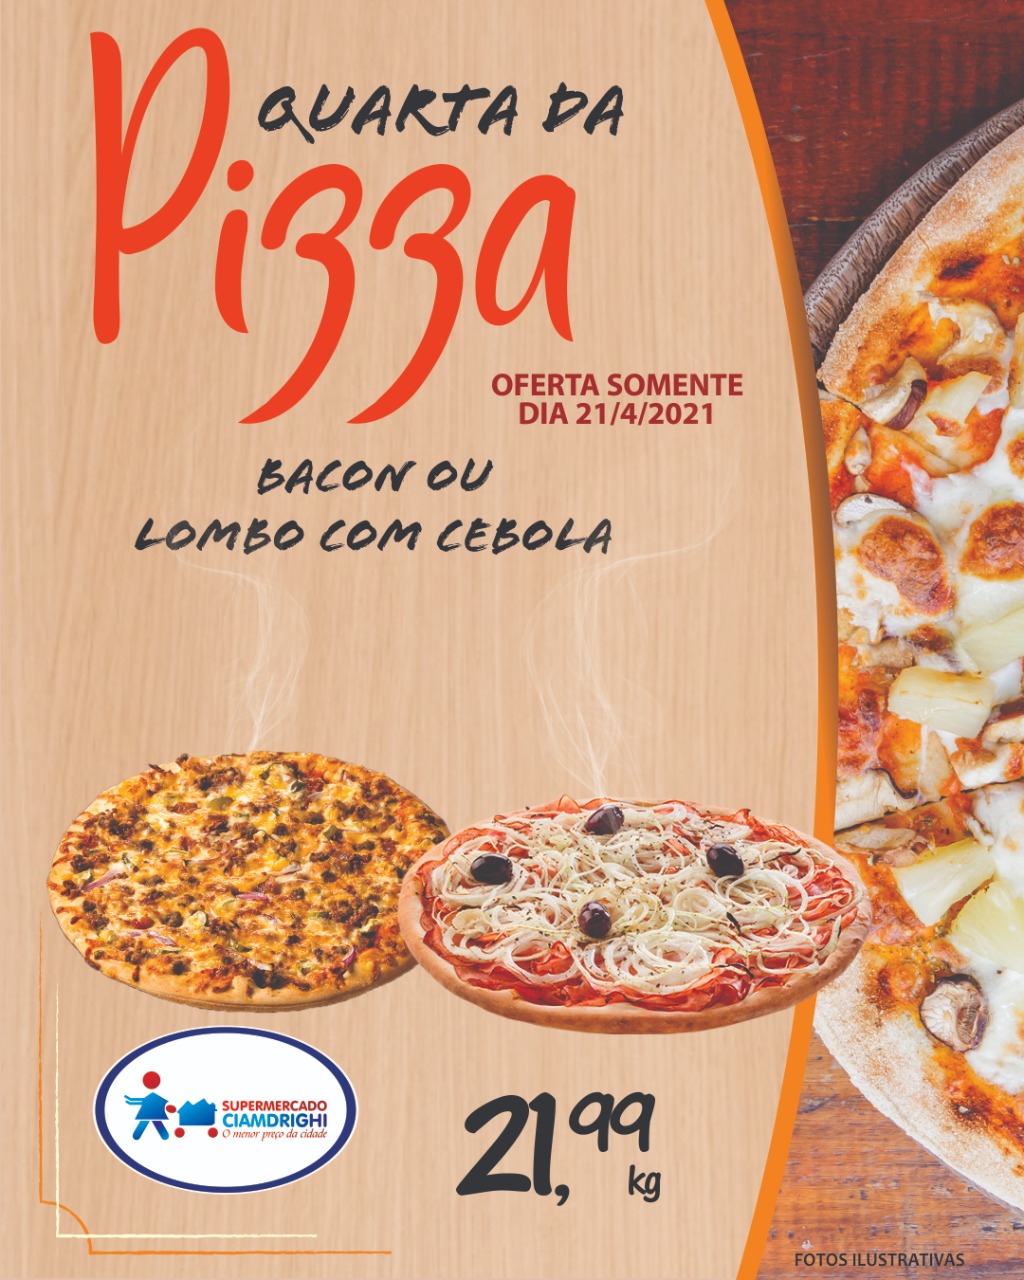 Ciamdrighi tem ofertas em pizzas, hortifrúti e mais 24 opções pelo delivery